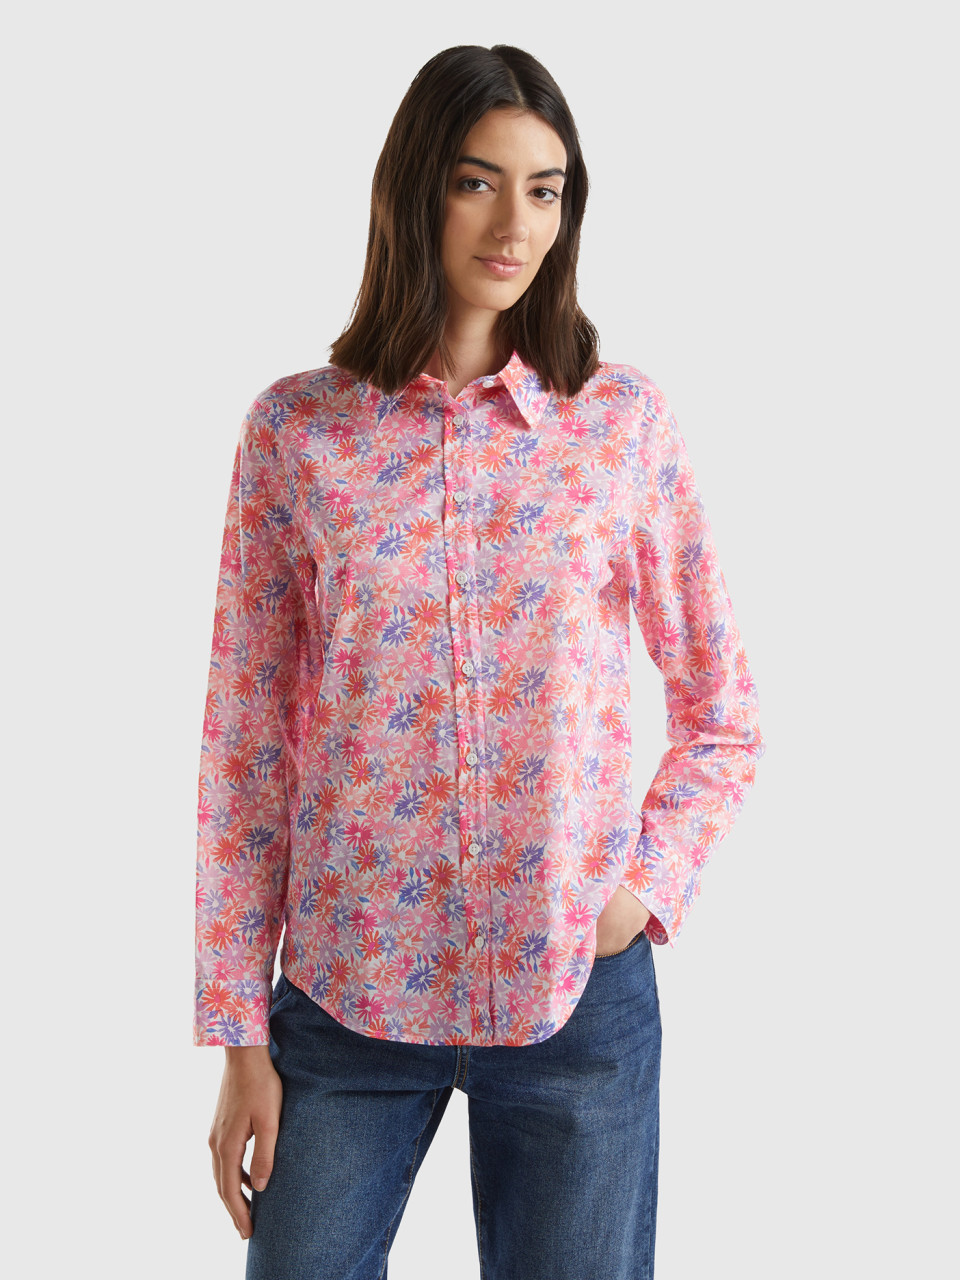 Benetton, 100% Cotton Patterned Shirt, Multi-color, Women